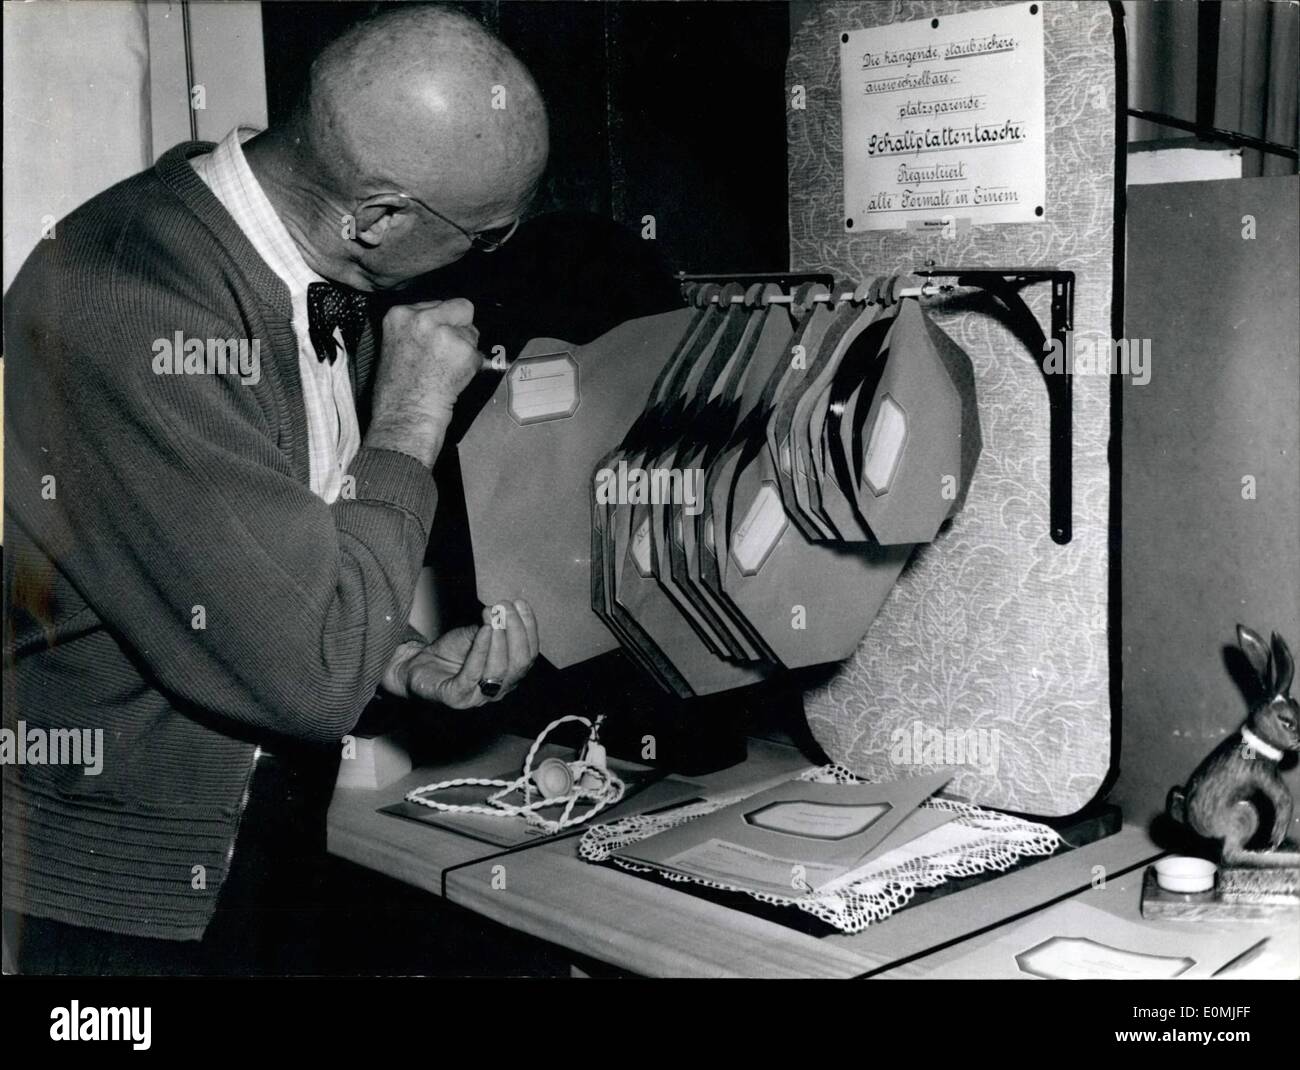 Sett. 09, 1955 - tedesco invenzione fiera a Norimberga: un cosiddetto ''disc-box'' le mappe appese le registrazioni di tutti si inceppa. Inventore: Wilh. Gluck, Nuremberg-Zabo Chamersty 14. Foto Stock